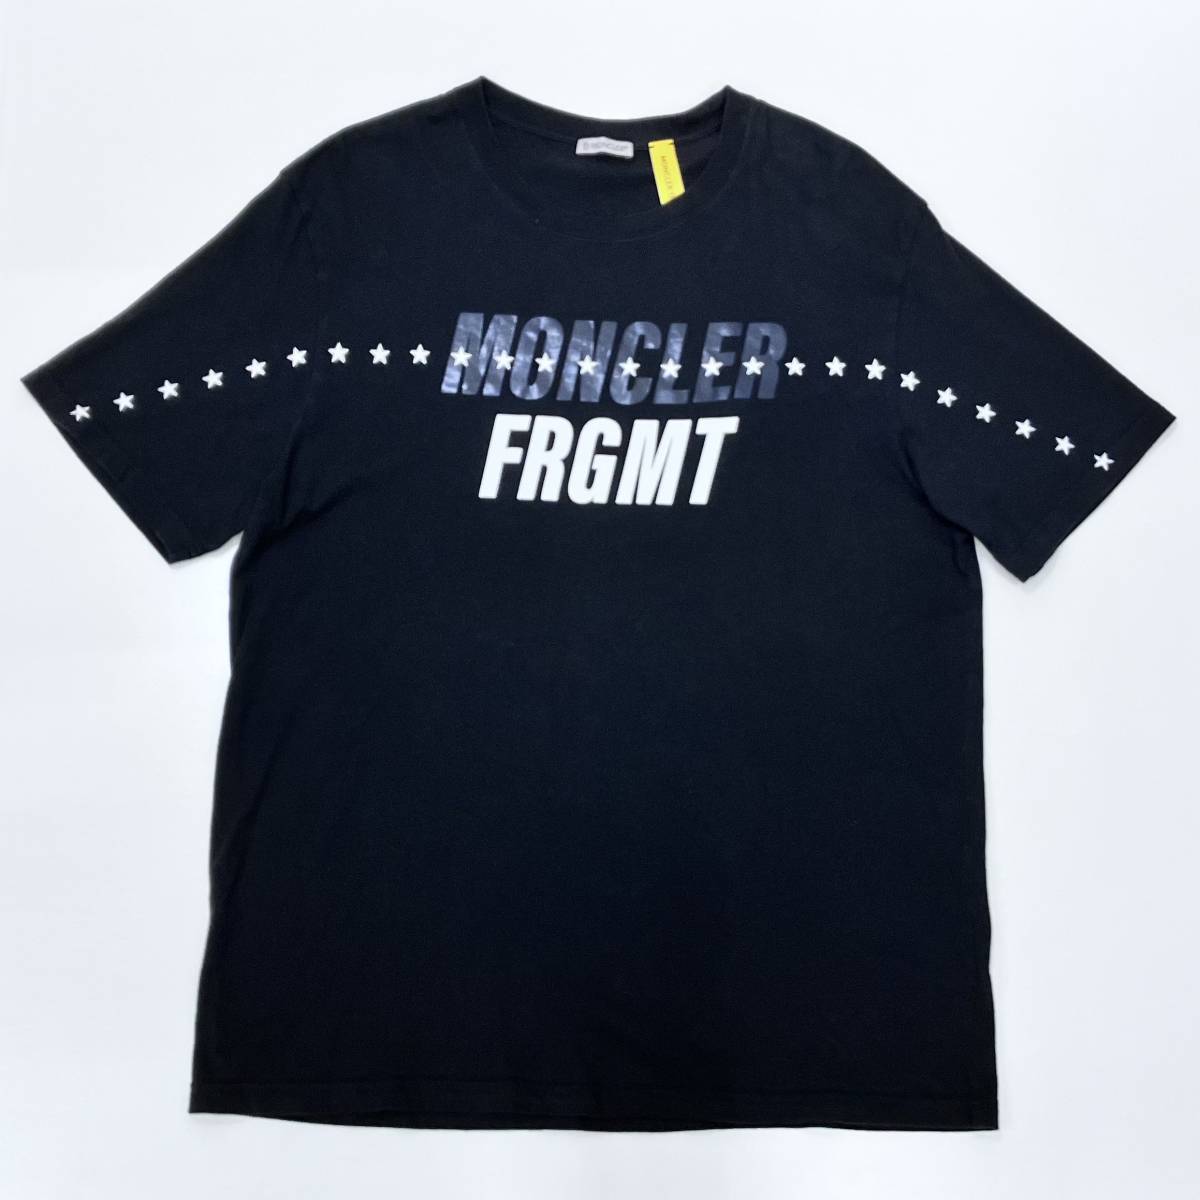 MONCLER モンクレール 半袖 Tシャツ ロゴ ビッグ ブラック G209U800003 GENIUS FRGMT サイズL